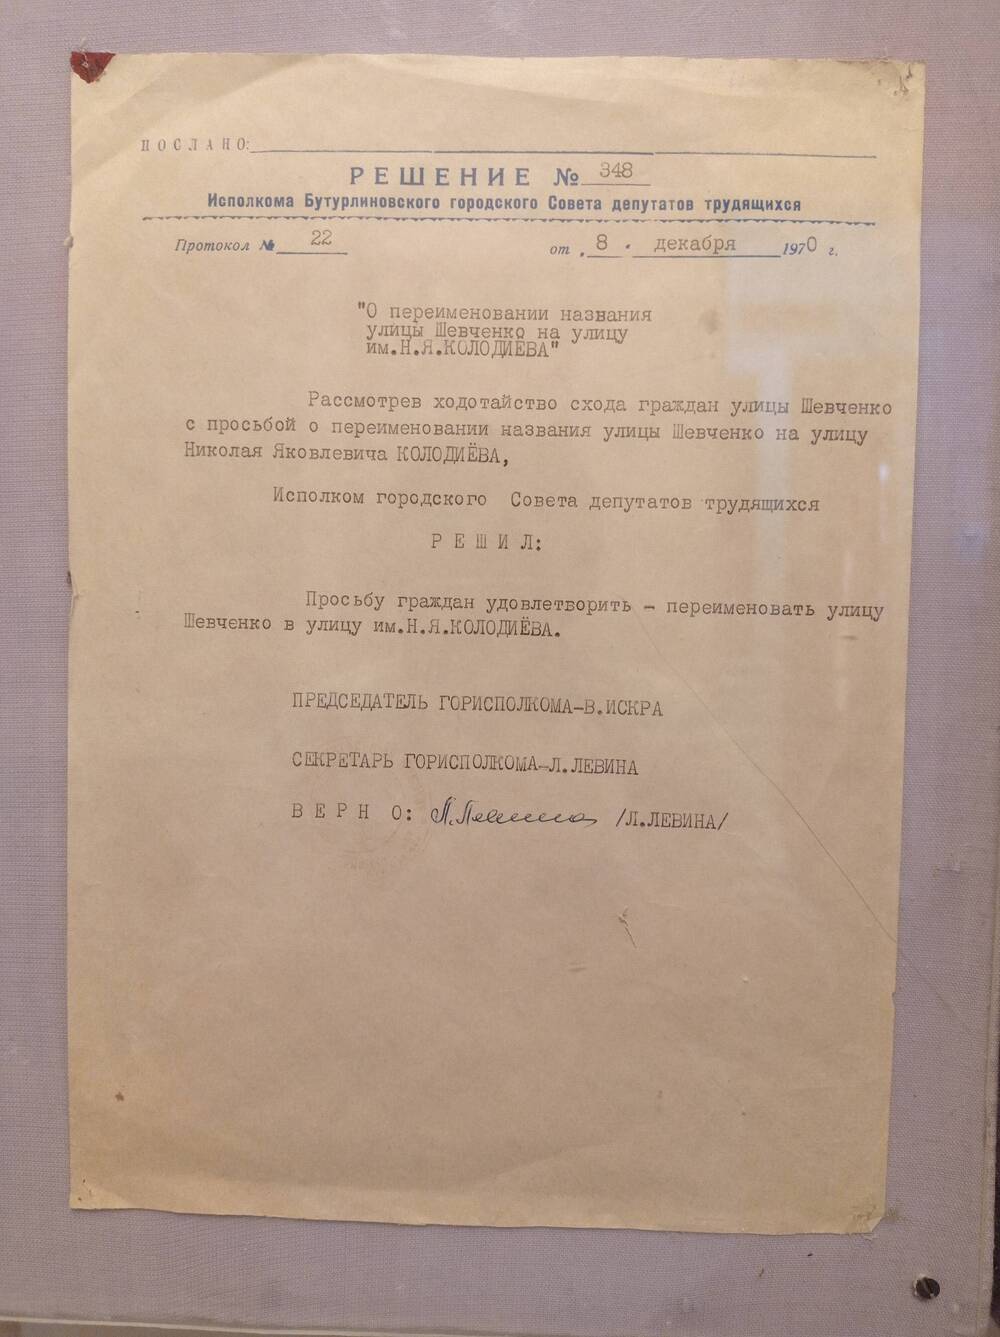 Решение исполкома городского Совета депутатов трудящихся от 8 декабря 1970 года О присвоении имени Колодиёва 8-летней школе №1